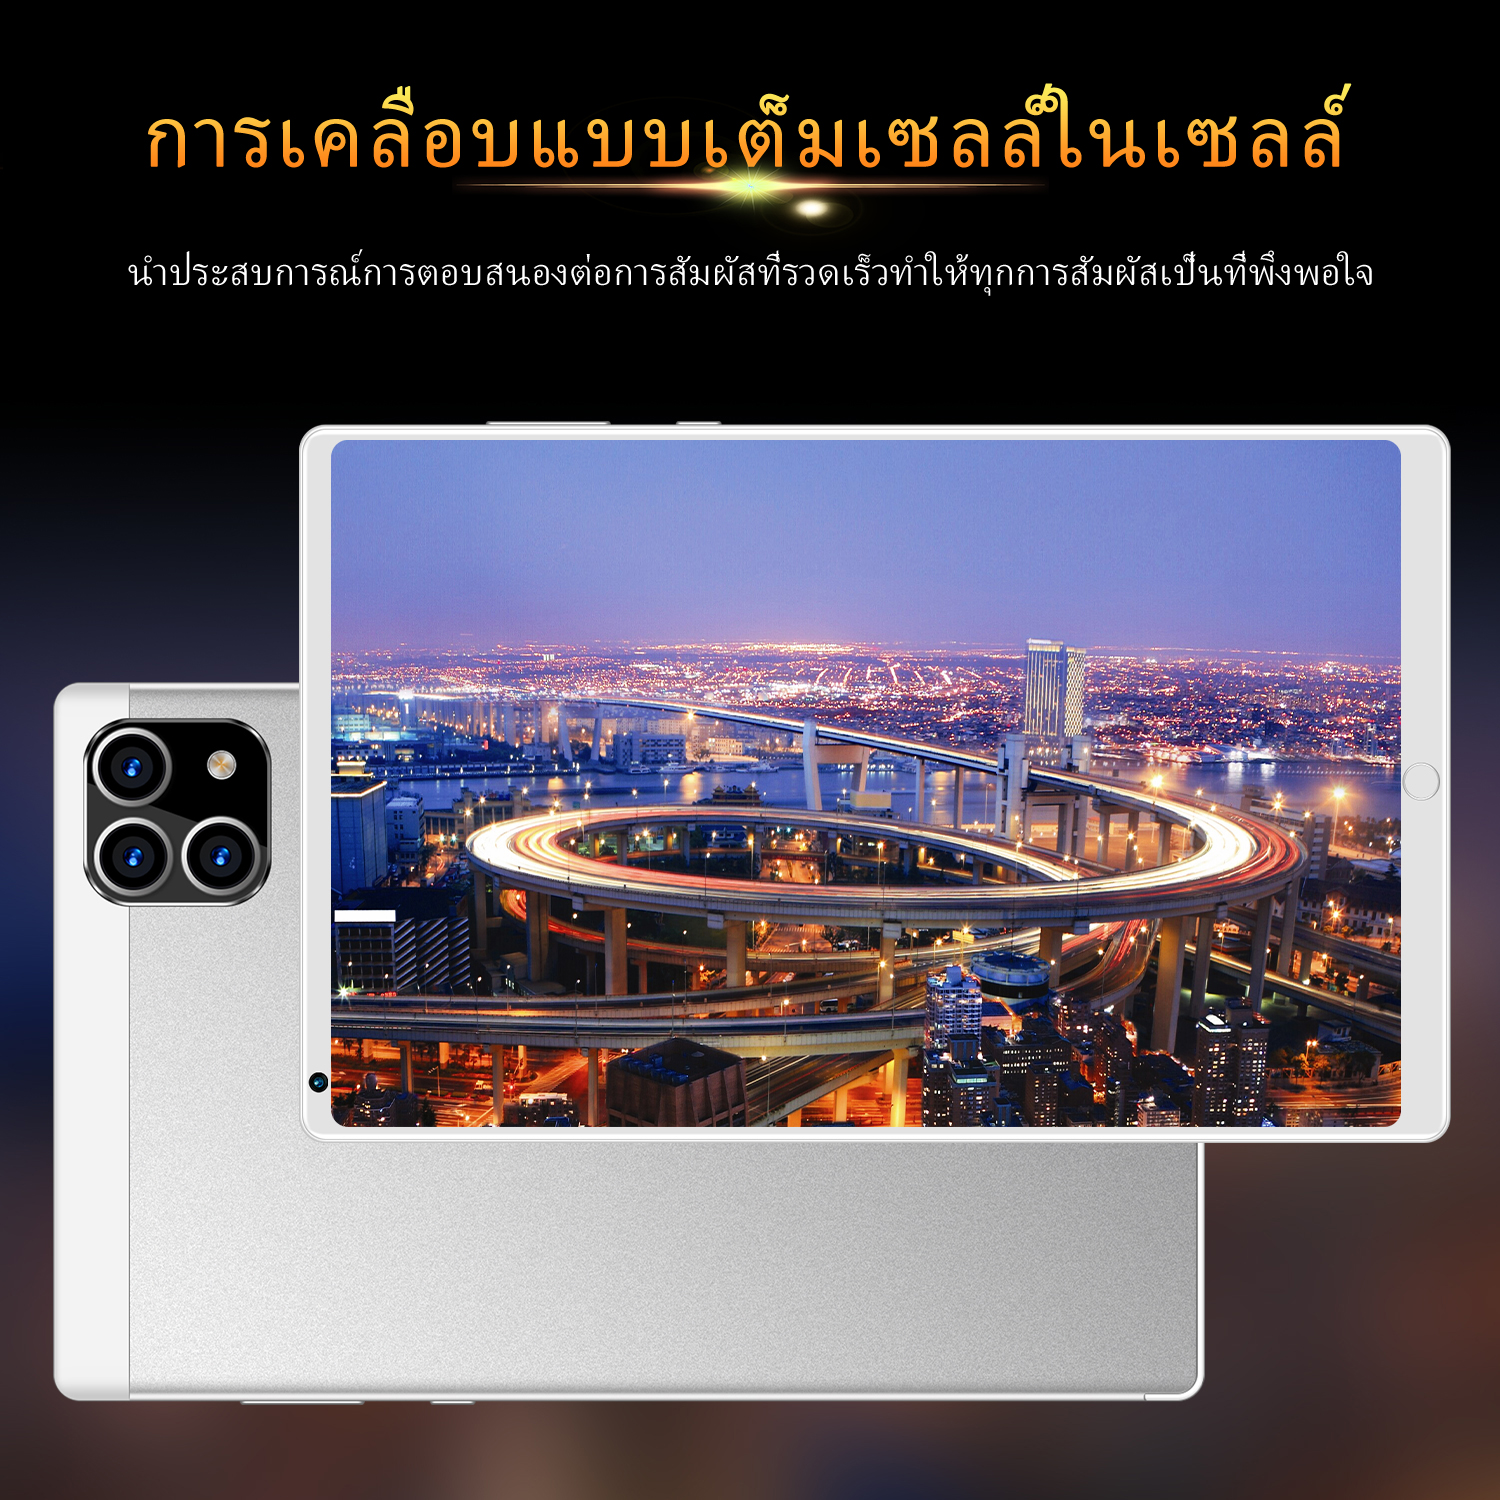 มุมมองเพิ่มเติมของสินค้า แท็บเล็ต OPPO แท็บเล็ตถูกๆ โทรได้ 10.1นิ้ว แท็บเล็ตราคาถูกๆ แทบเล็ตราคาถูก RAM12G ROM512G Andorid Tablet จัดส่งฟรี แทบเล็ตราคาถูก รองรับภาษาไทย แท็บเล็ตสำหรับเล่นเกมราคาถูก รองรับภาษาไทย ไอเเพ็ด Full HD แท็บเล็ต แท็บเล็ตราคาถูกรุ่นล่าสุด